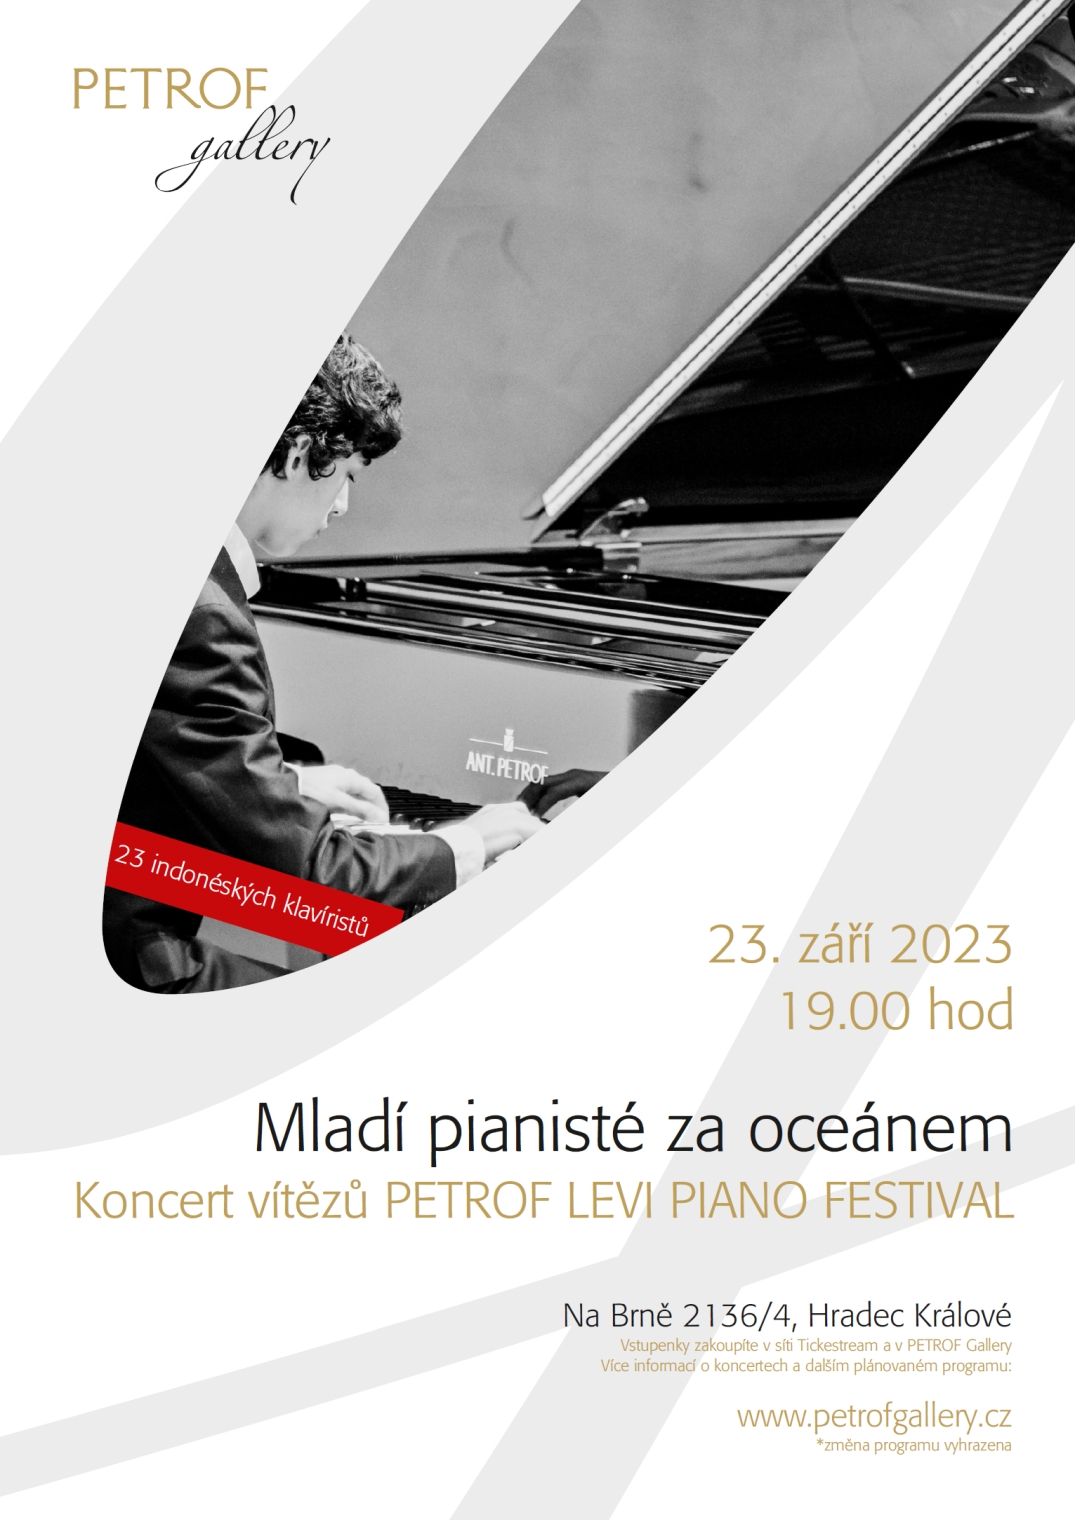 Koncert vítězů PETROF LEVI PIANO FESTIVAL